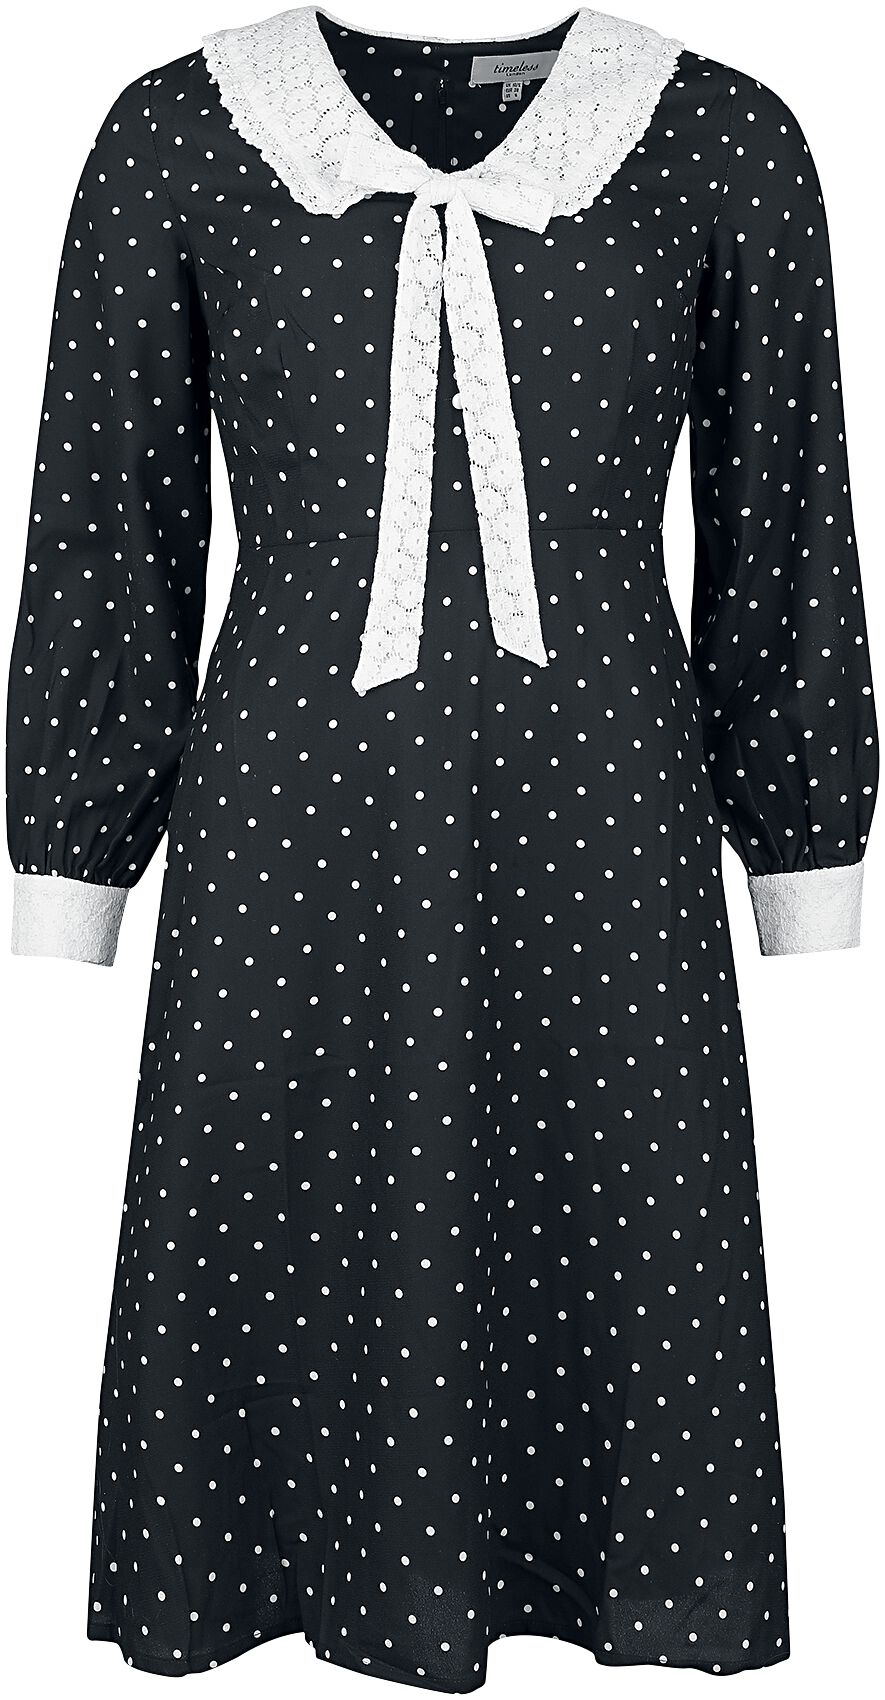 Timeless London Bow Front Dress Mittellanges Kleid schwarz weiß in M